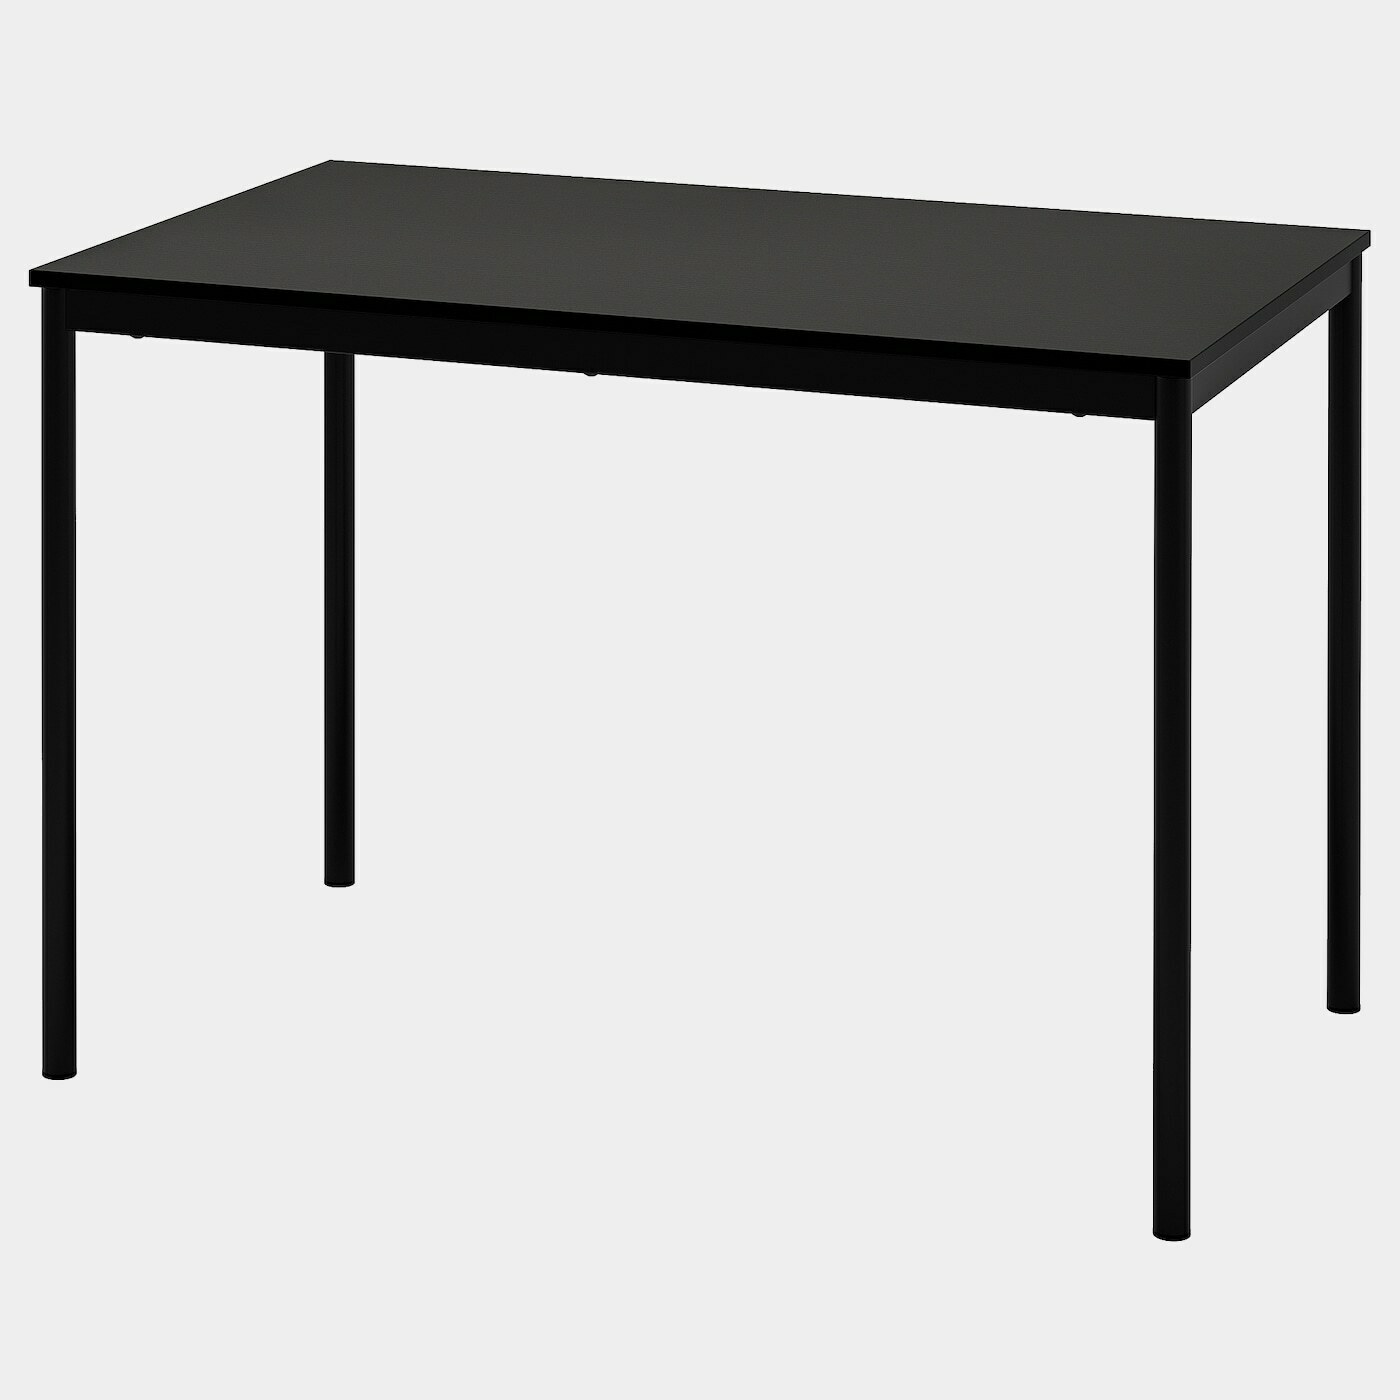 SANDSBERG Tisch  -  - Möbel Ideen für dein Zuhause von Home Trends. Möbel Trends von Social Media Influencer für dein Skandi Zuhause.